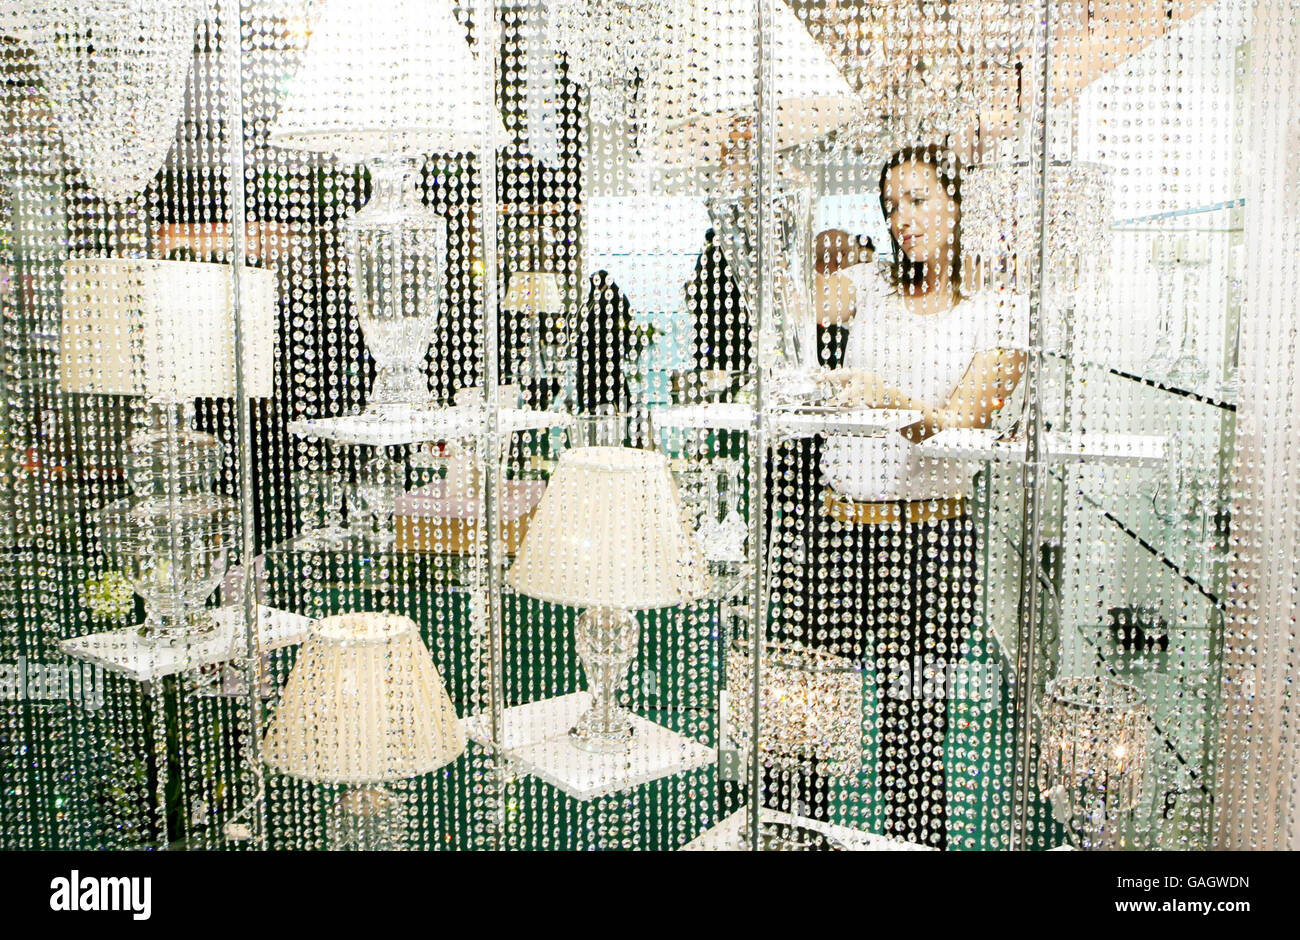 Un acheteur regarde une lampe au Tipperary Crystal stall de Showcase Ireland, le salon international de l'artisanat, du cadeau, de la mode et de l'intérieur qui a ouvert au RDS à Dublin. Banque D'Images